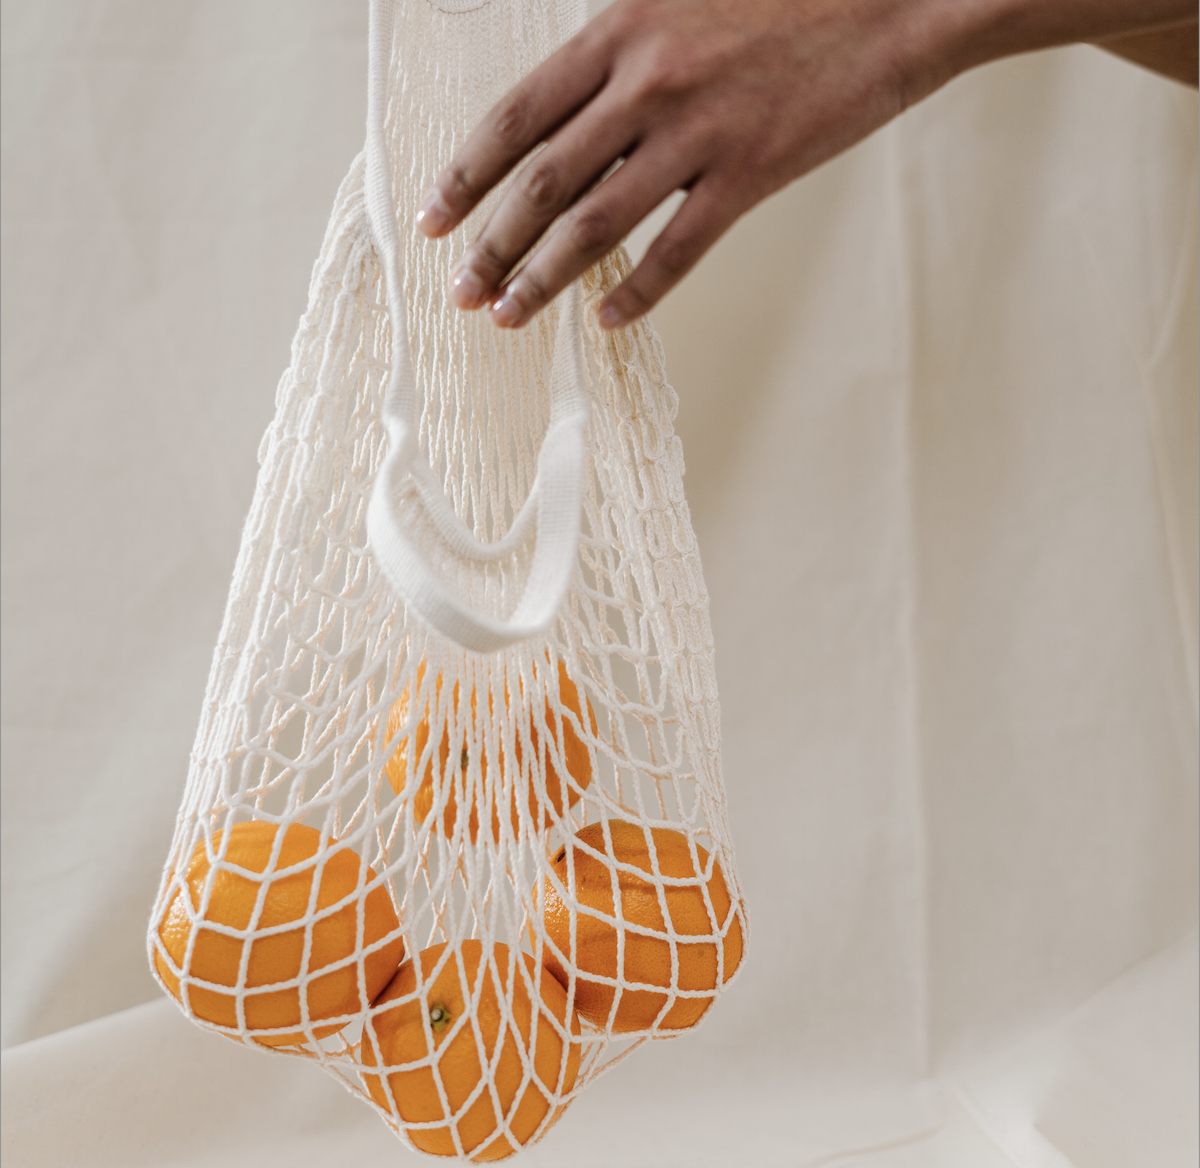 En hånd legger en appelsin ned i et nett med flere appelsiner | Vi jobber for mer bærekraftig mat | Coor